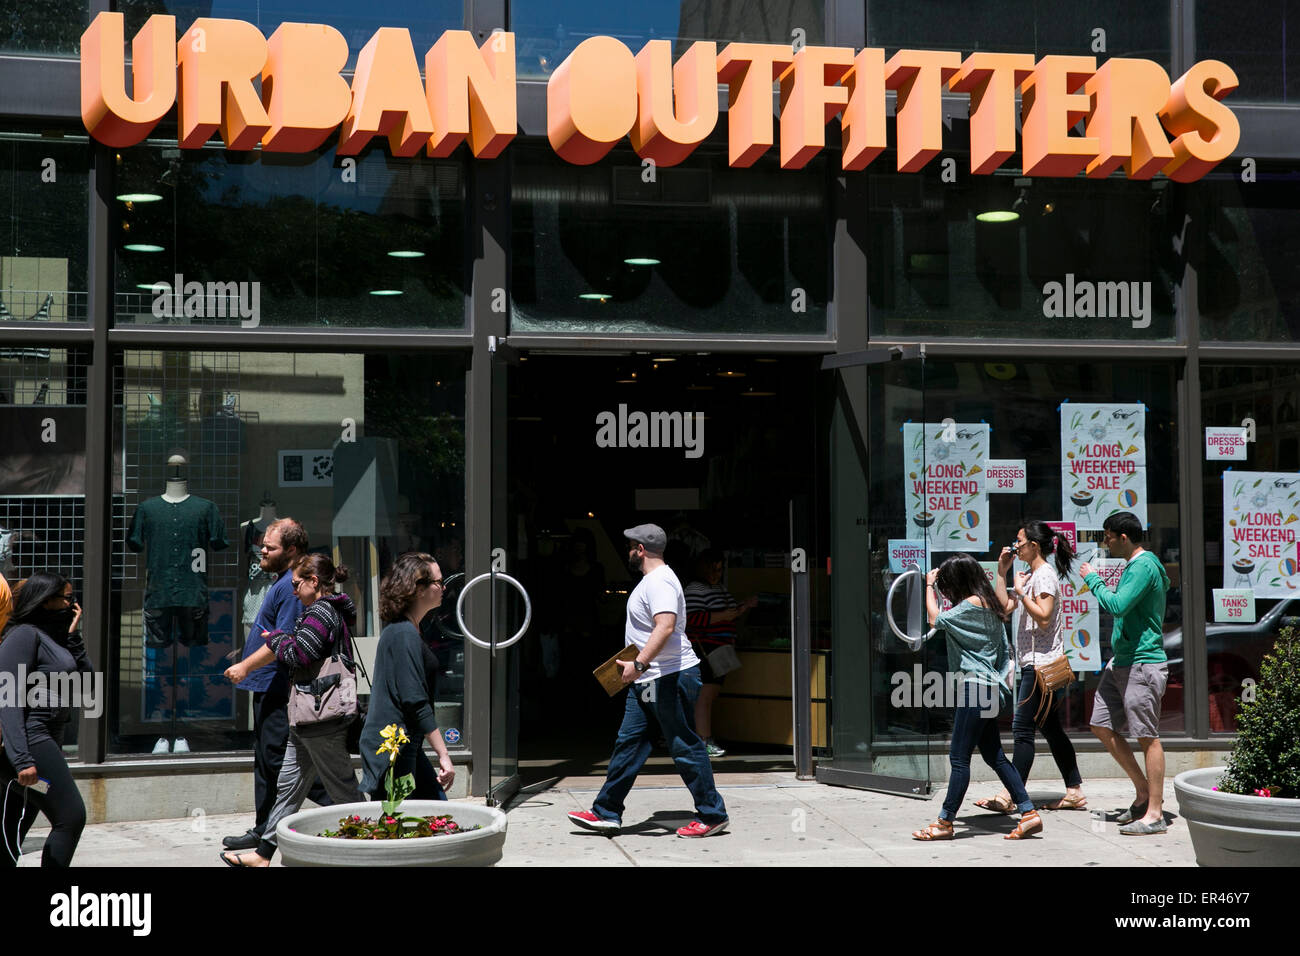 Einem Urban Outfitters Store in der Innenstadt von Philadelphia, Pennsylvania. Stockfoto